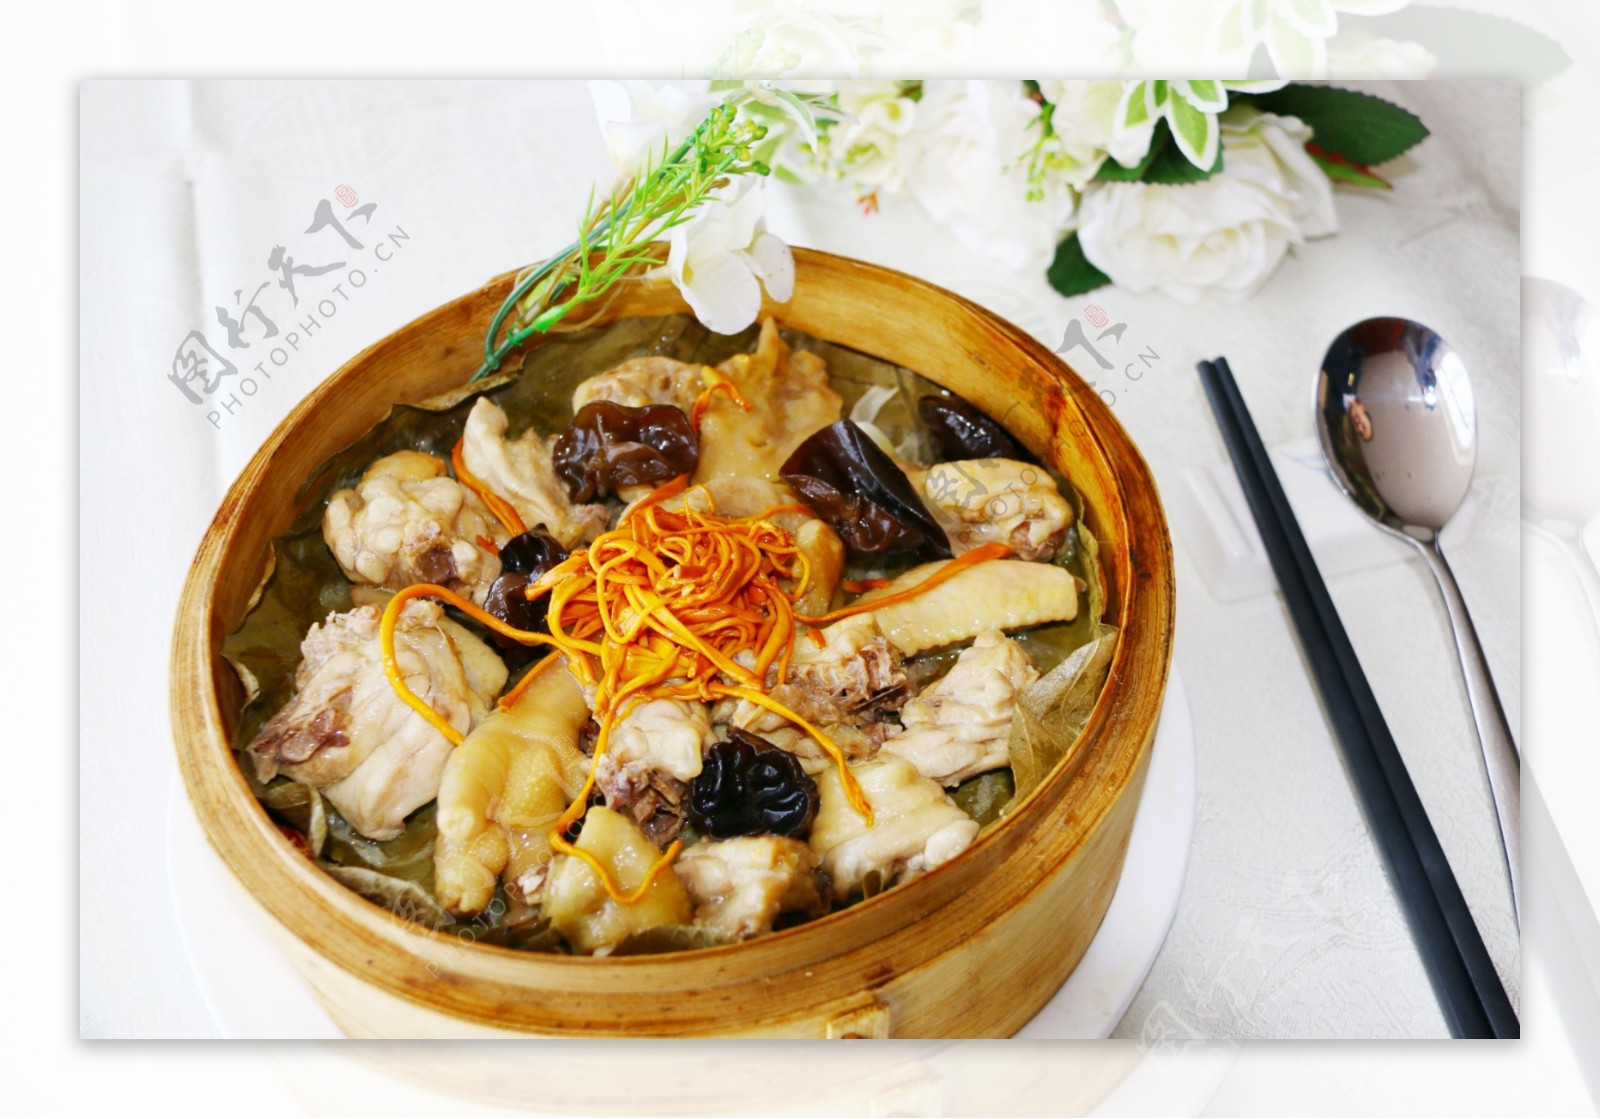 “虫草花蒸鸡正是地地道道的广东菜。很多本土农庄和酒楼都会见到它的身影。